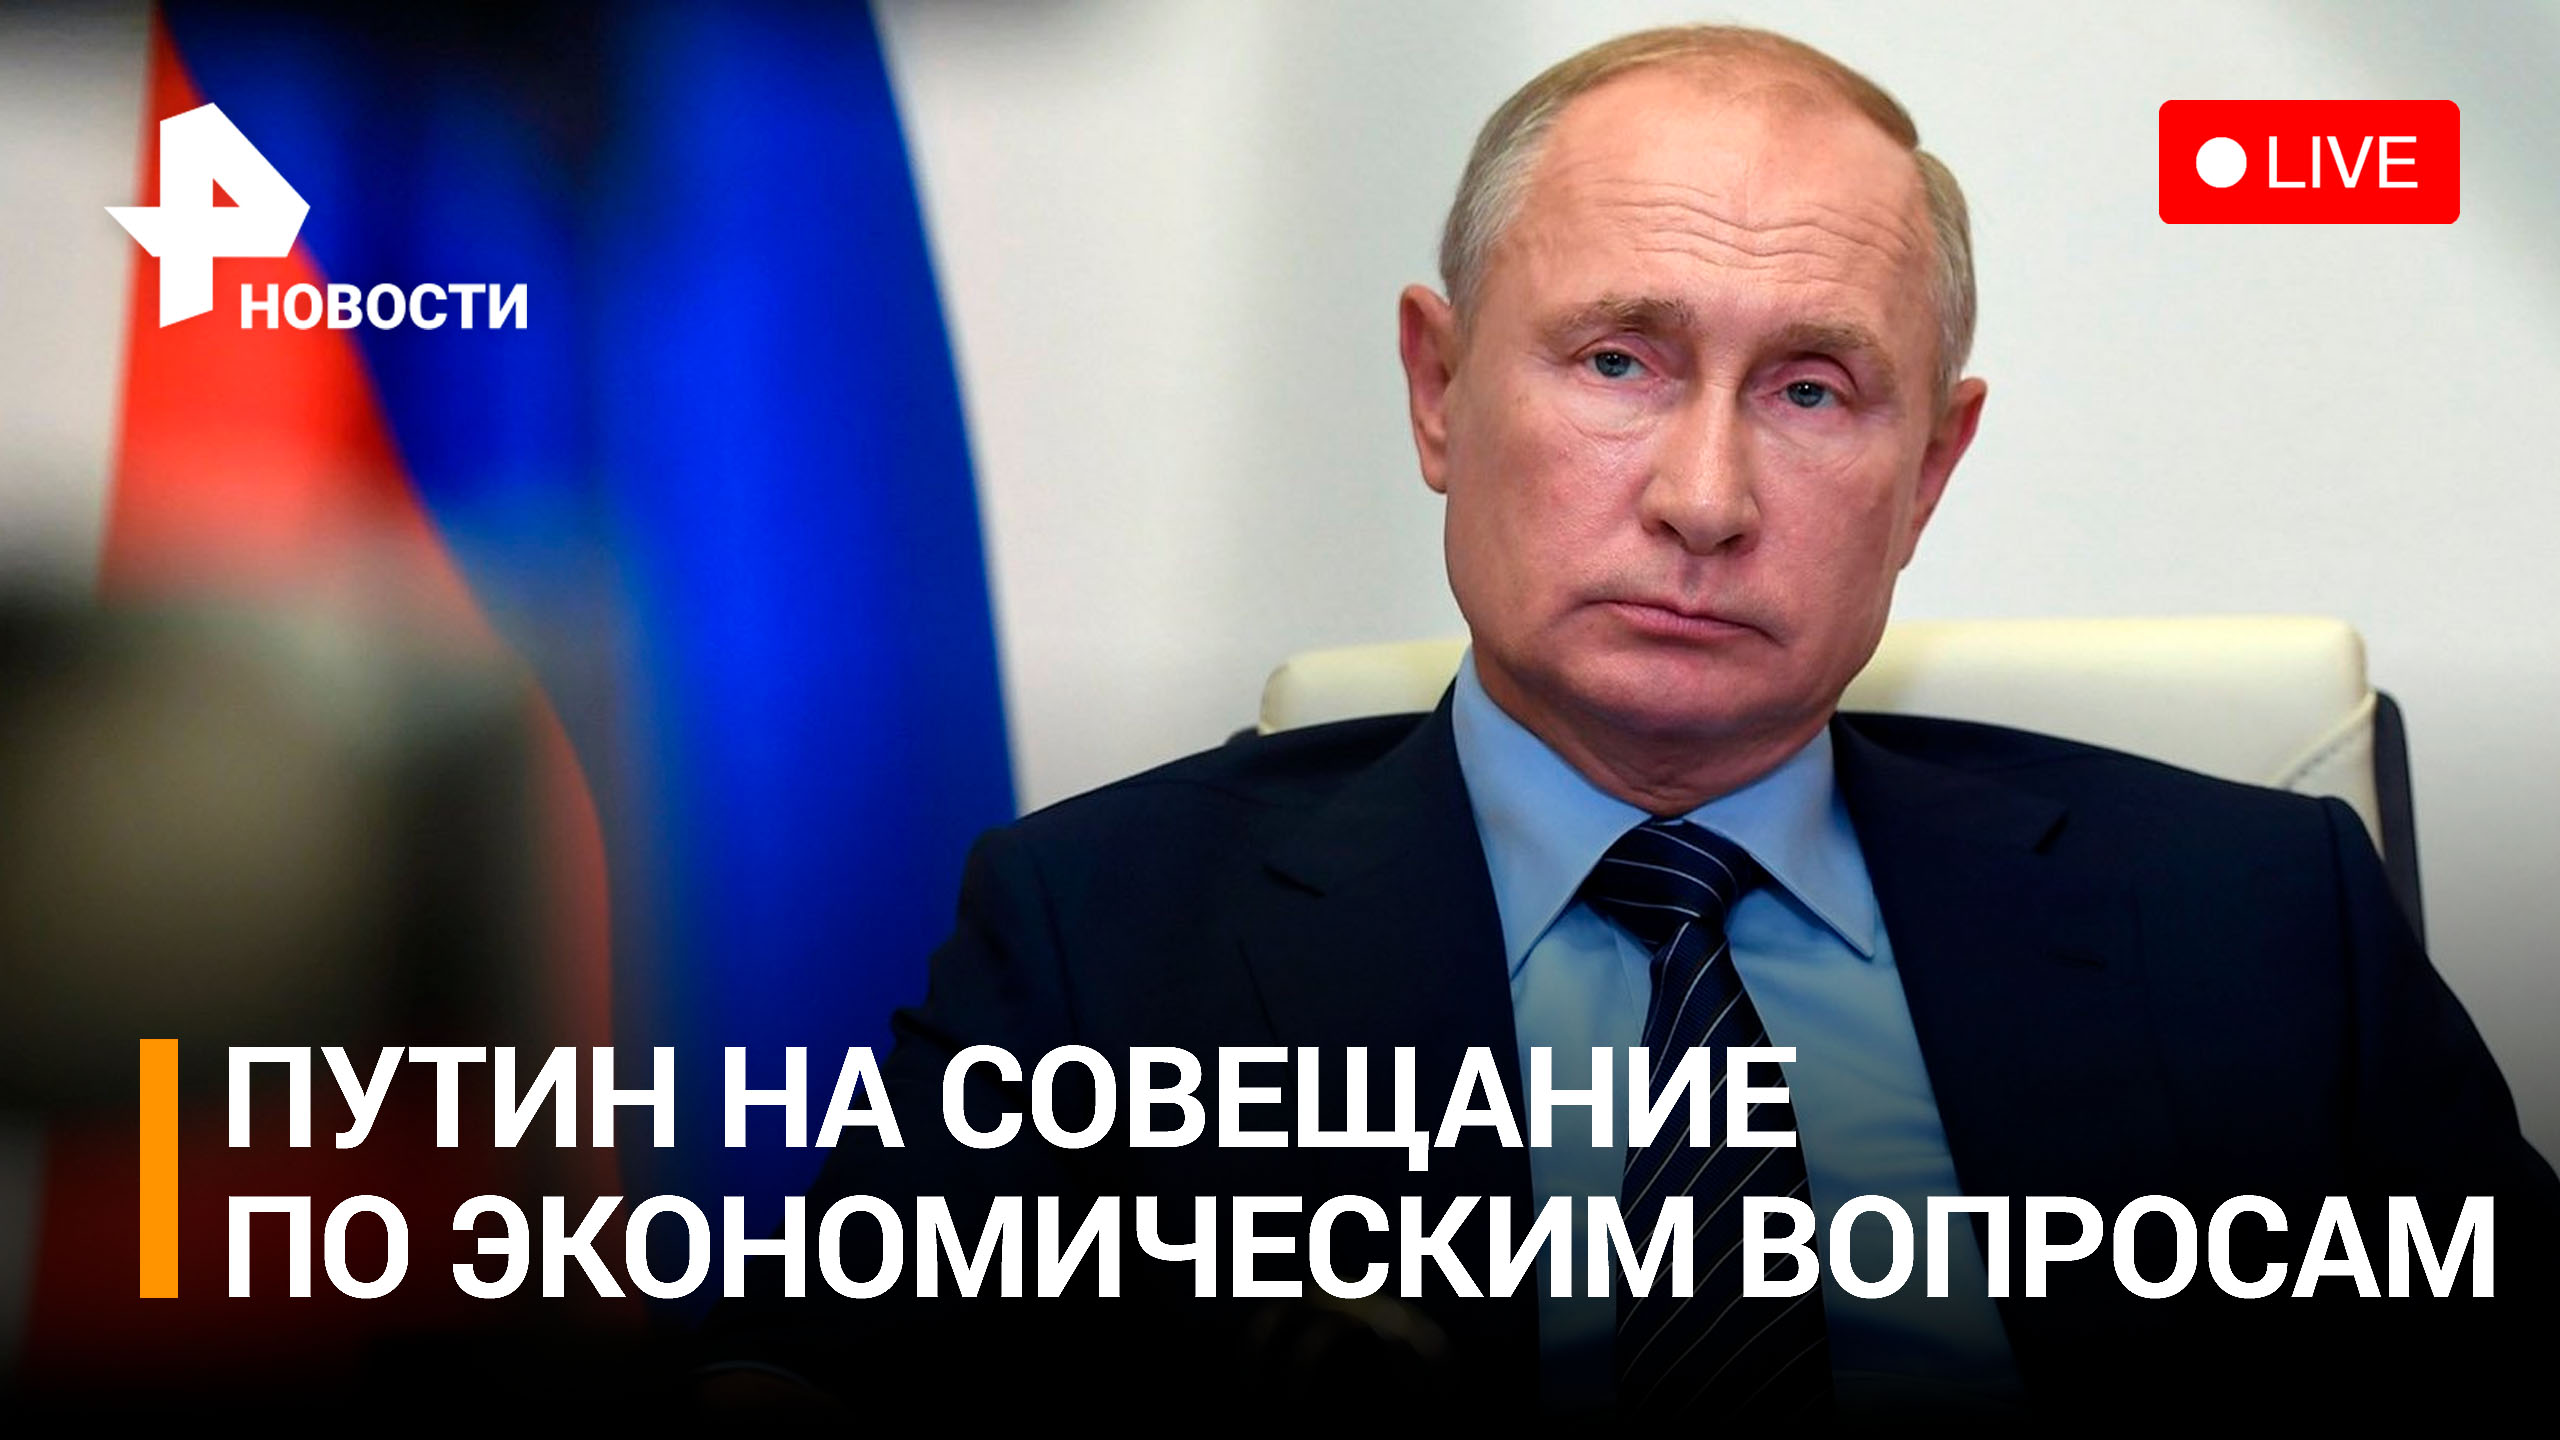 Вступительное слово Владимира Путина на совещание по экономическим вопросам. Прямая трансляция